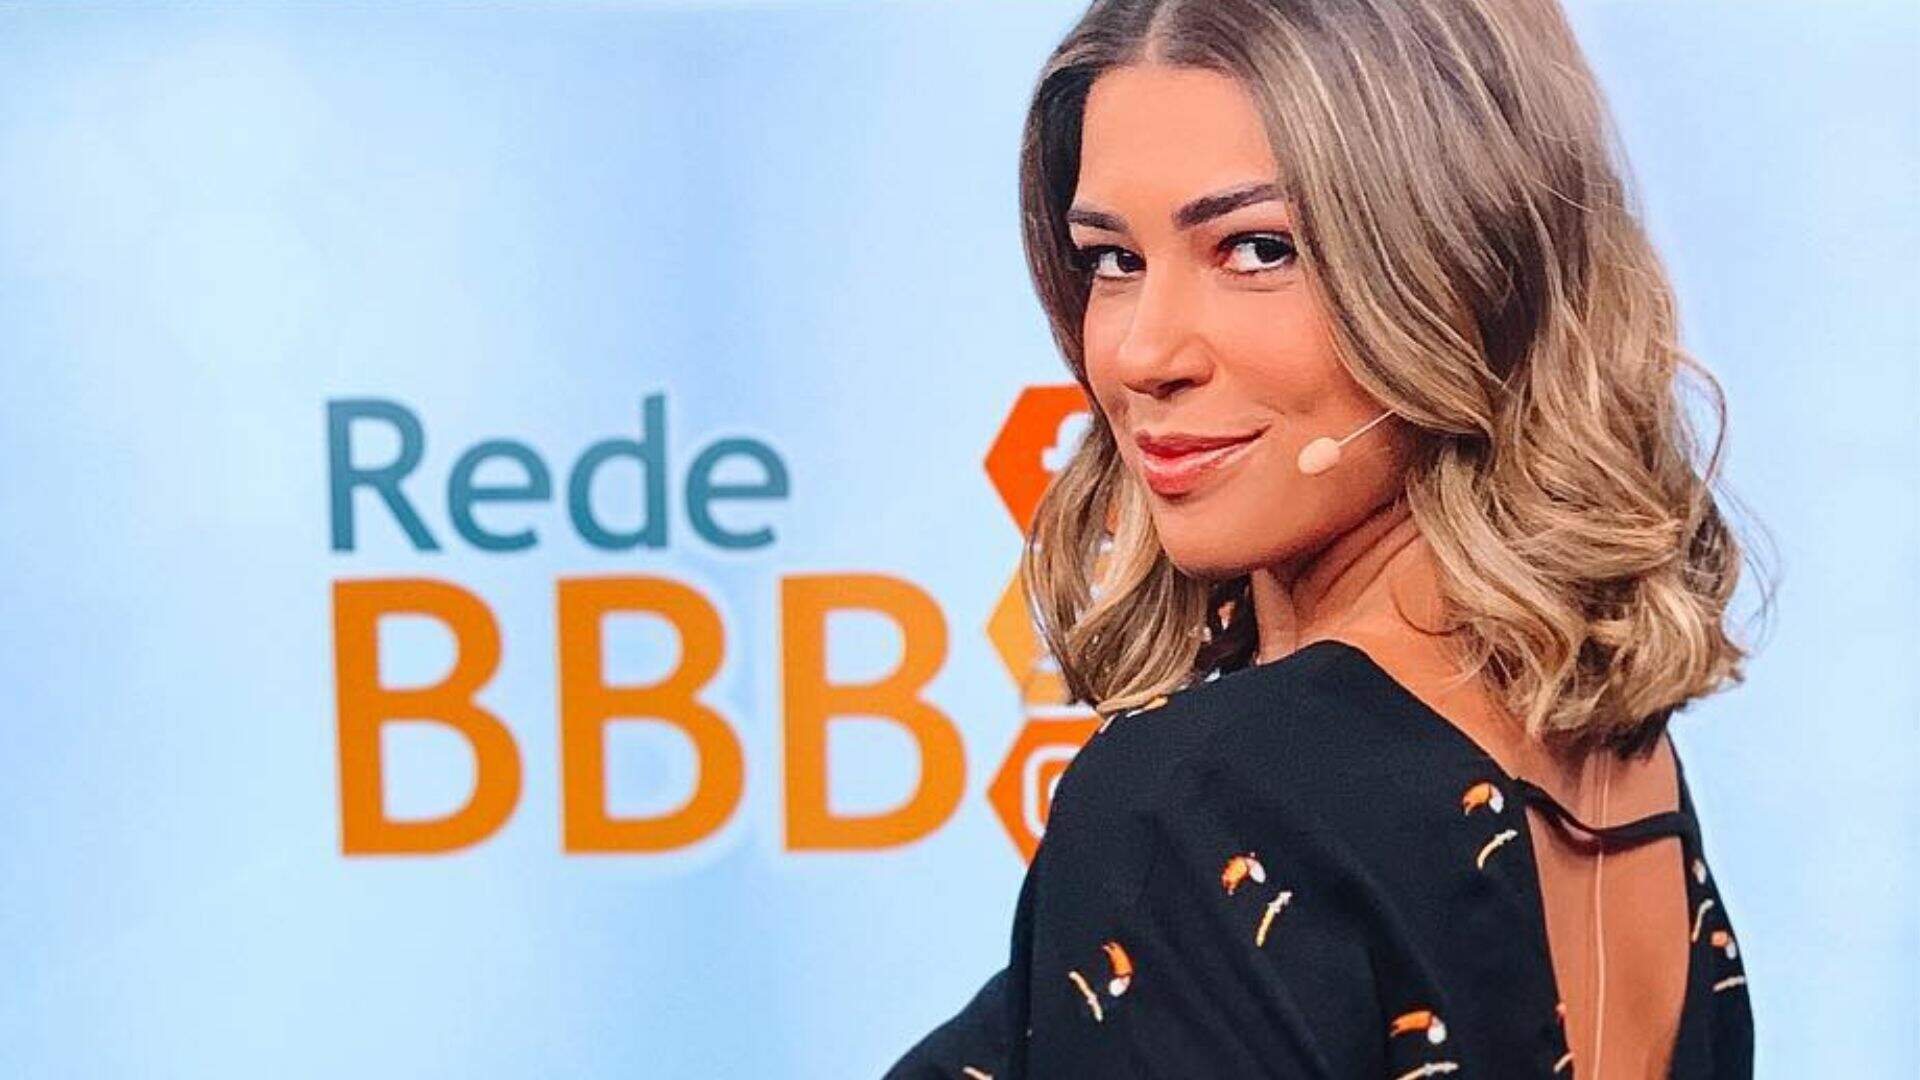 BBB 24: Vivian Amorim não confirma participação no ‘Rede BBB’ e explica motivo da espera - Metropolitana FM